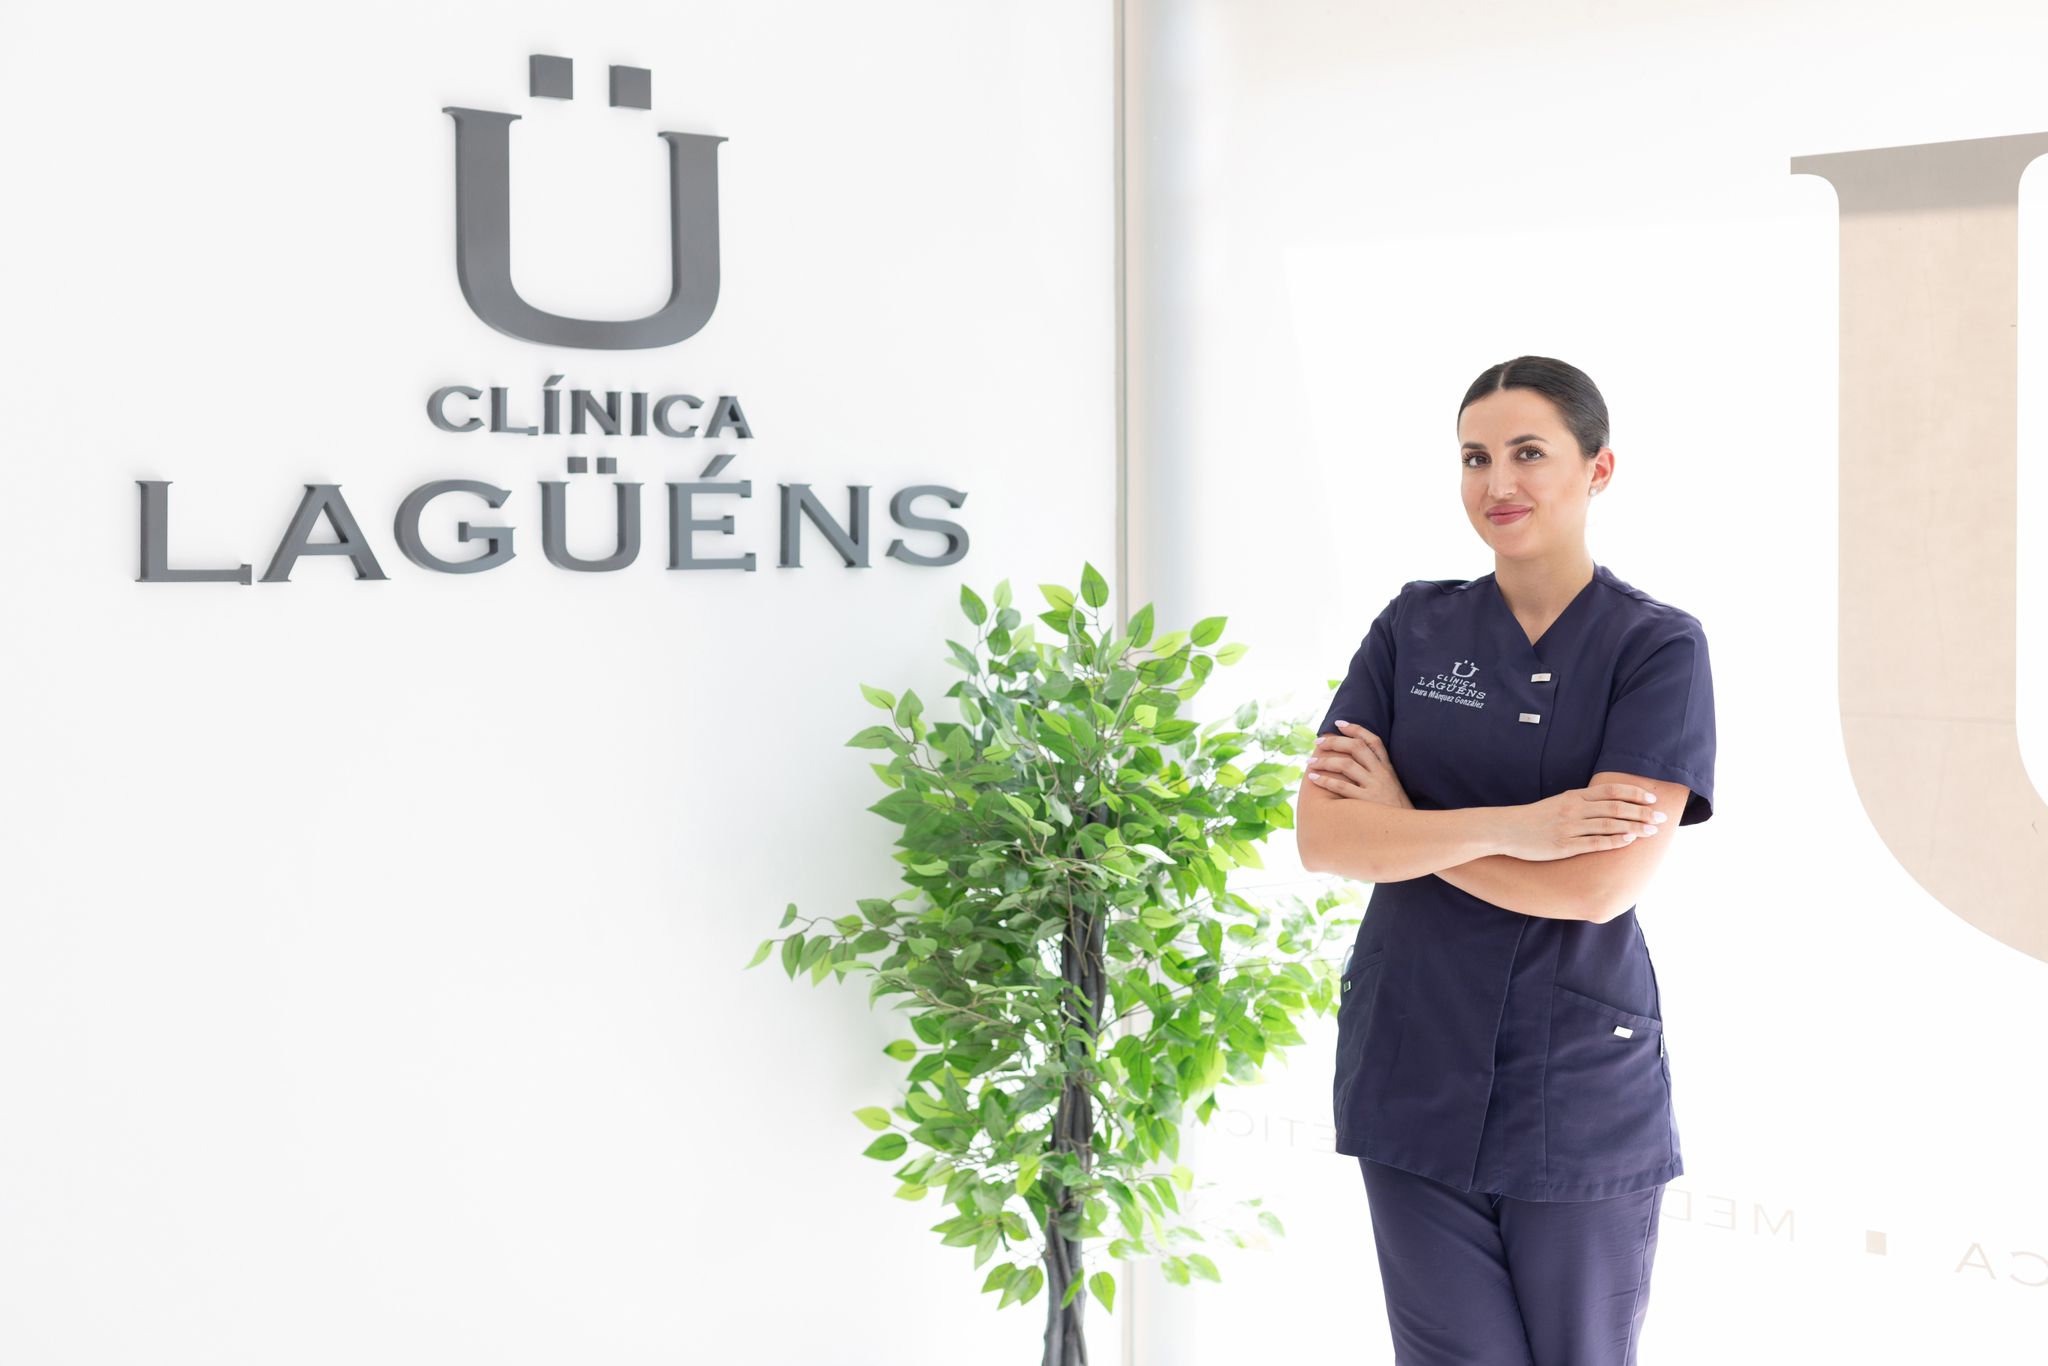 Soledad Lagüéns, es fundadora y directora médica de clinica lagüéns, medicina estetica en Sevilla